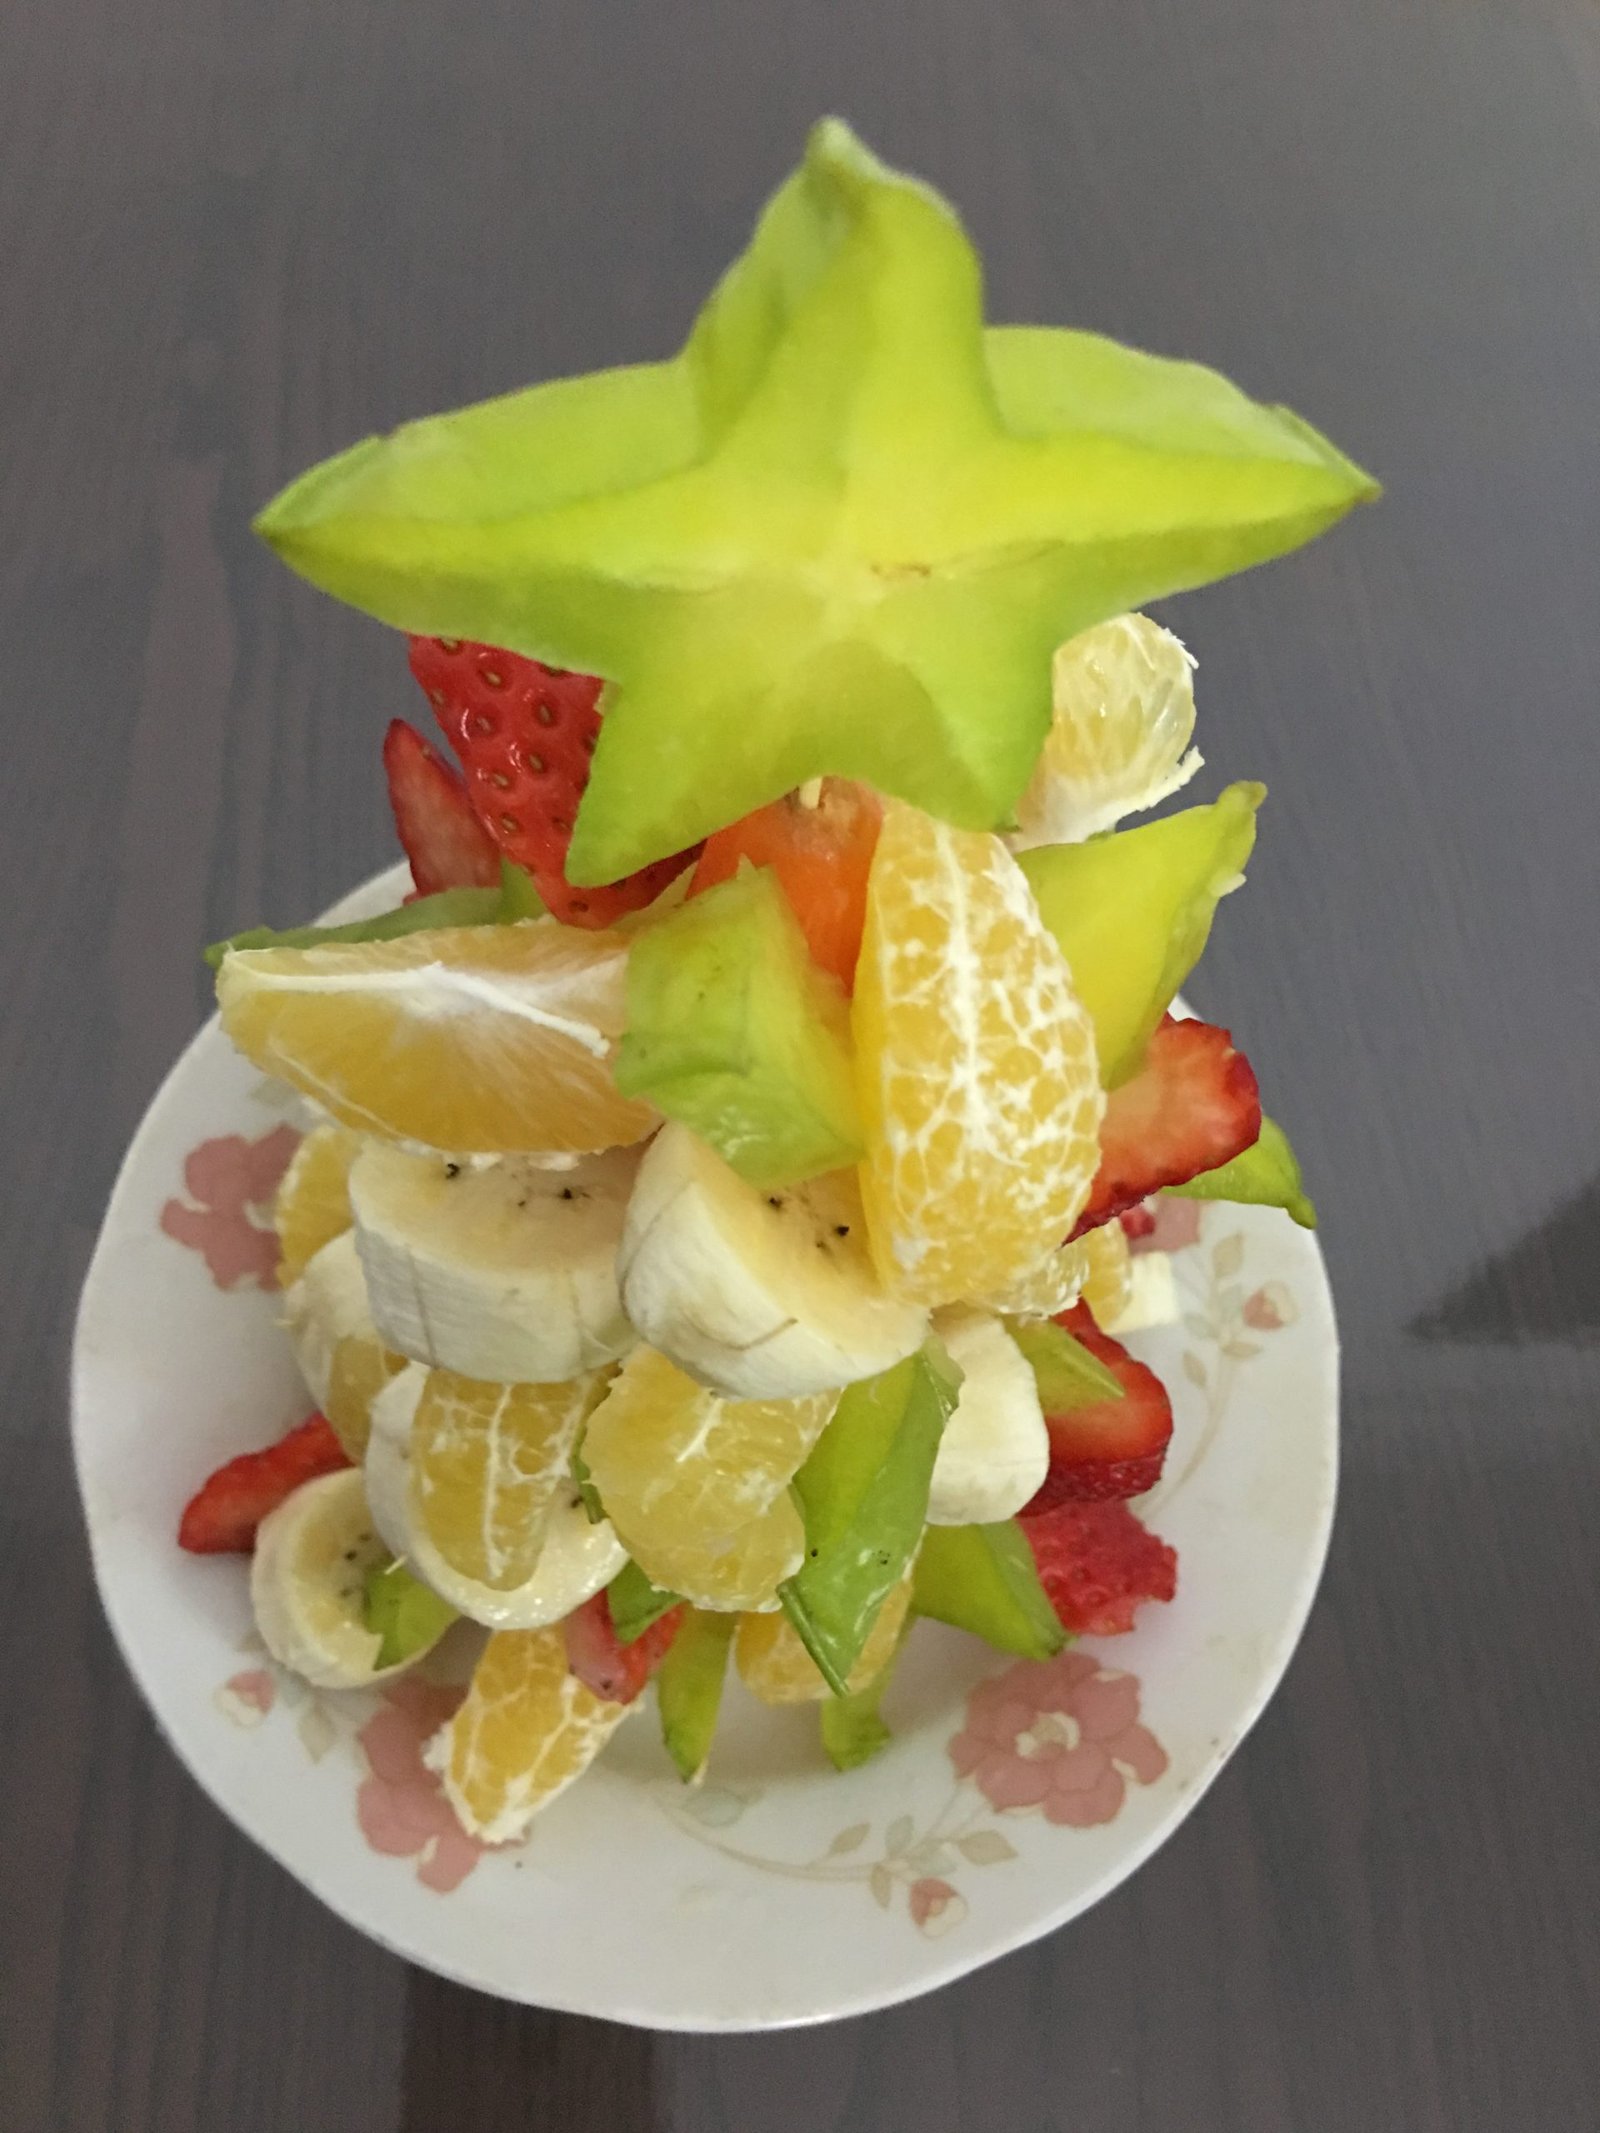  Fruit platter